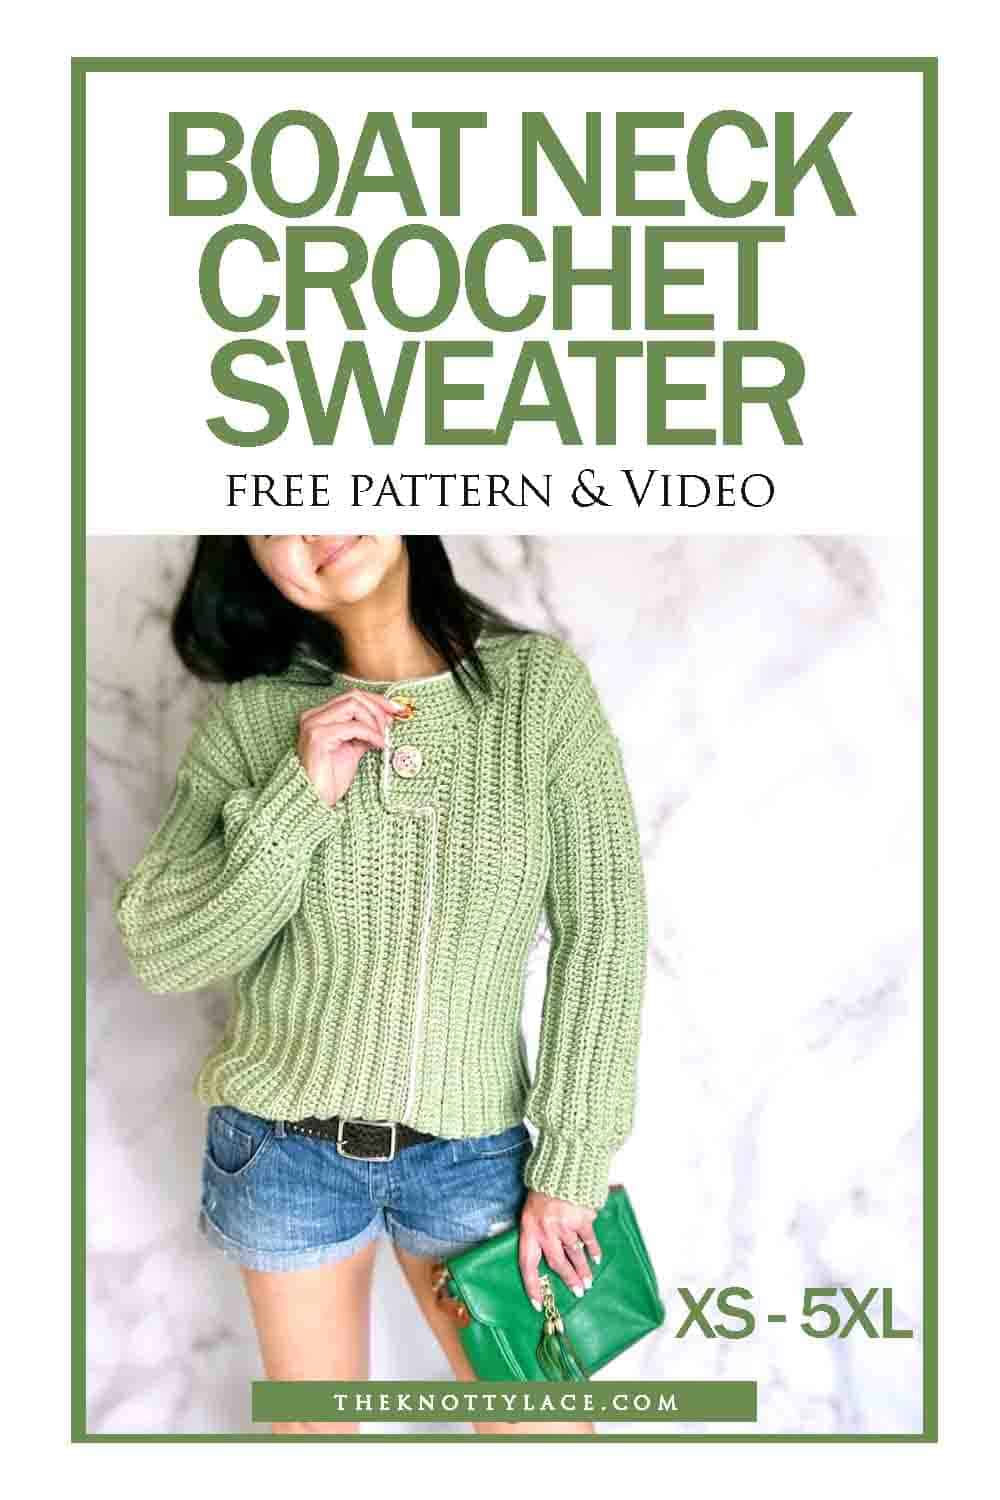 Boat Neck Crochet Sweater Free Pattern & Video Tutorial